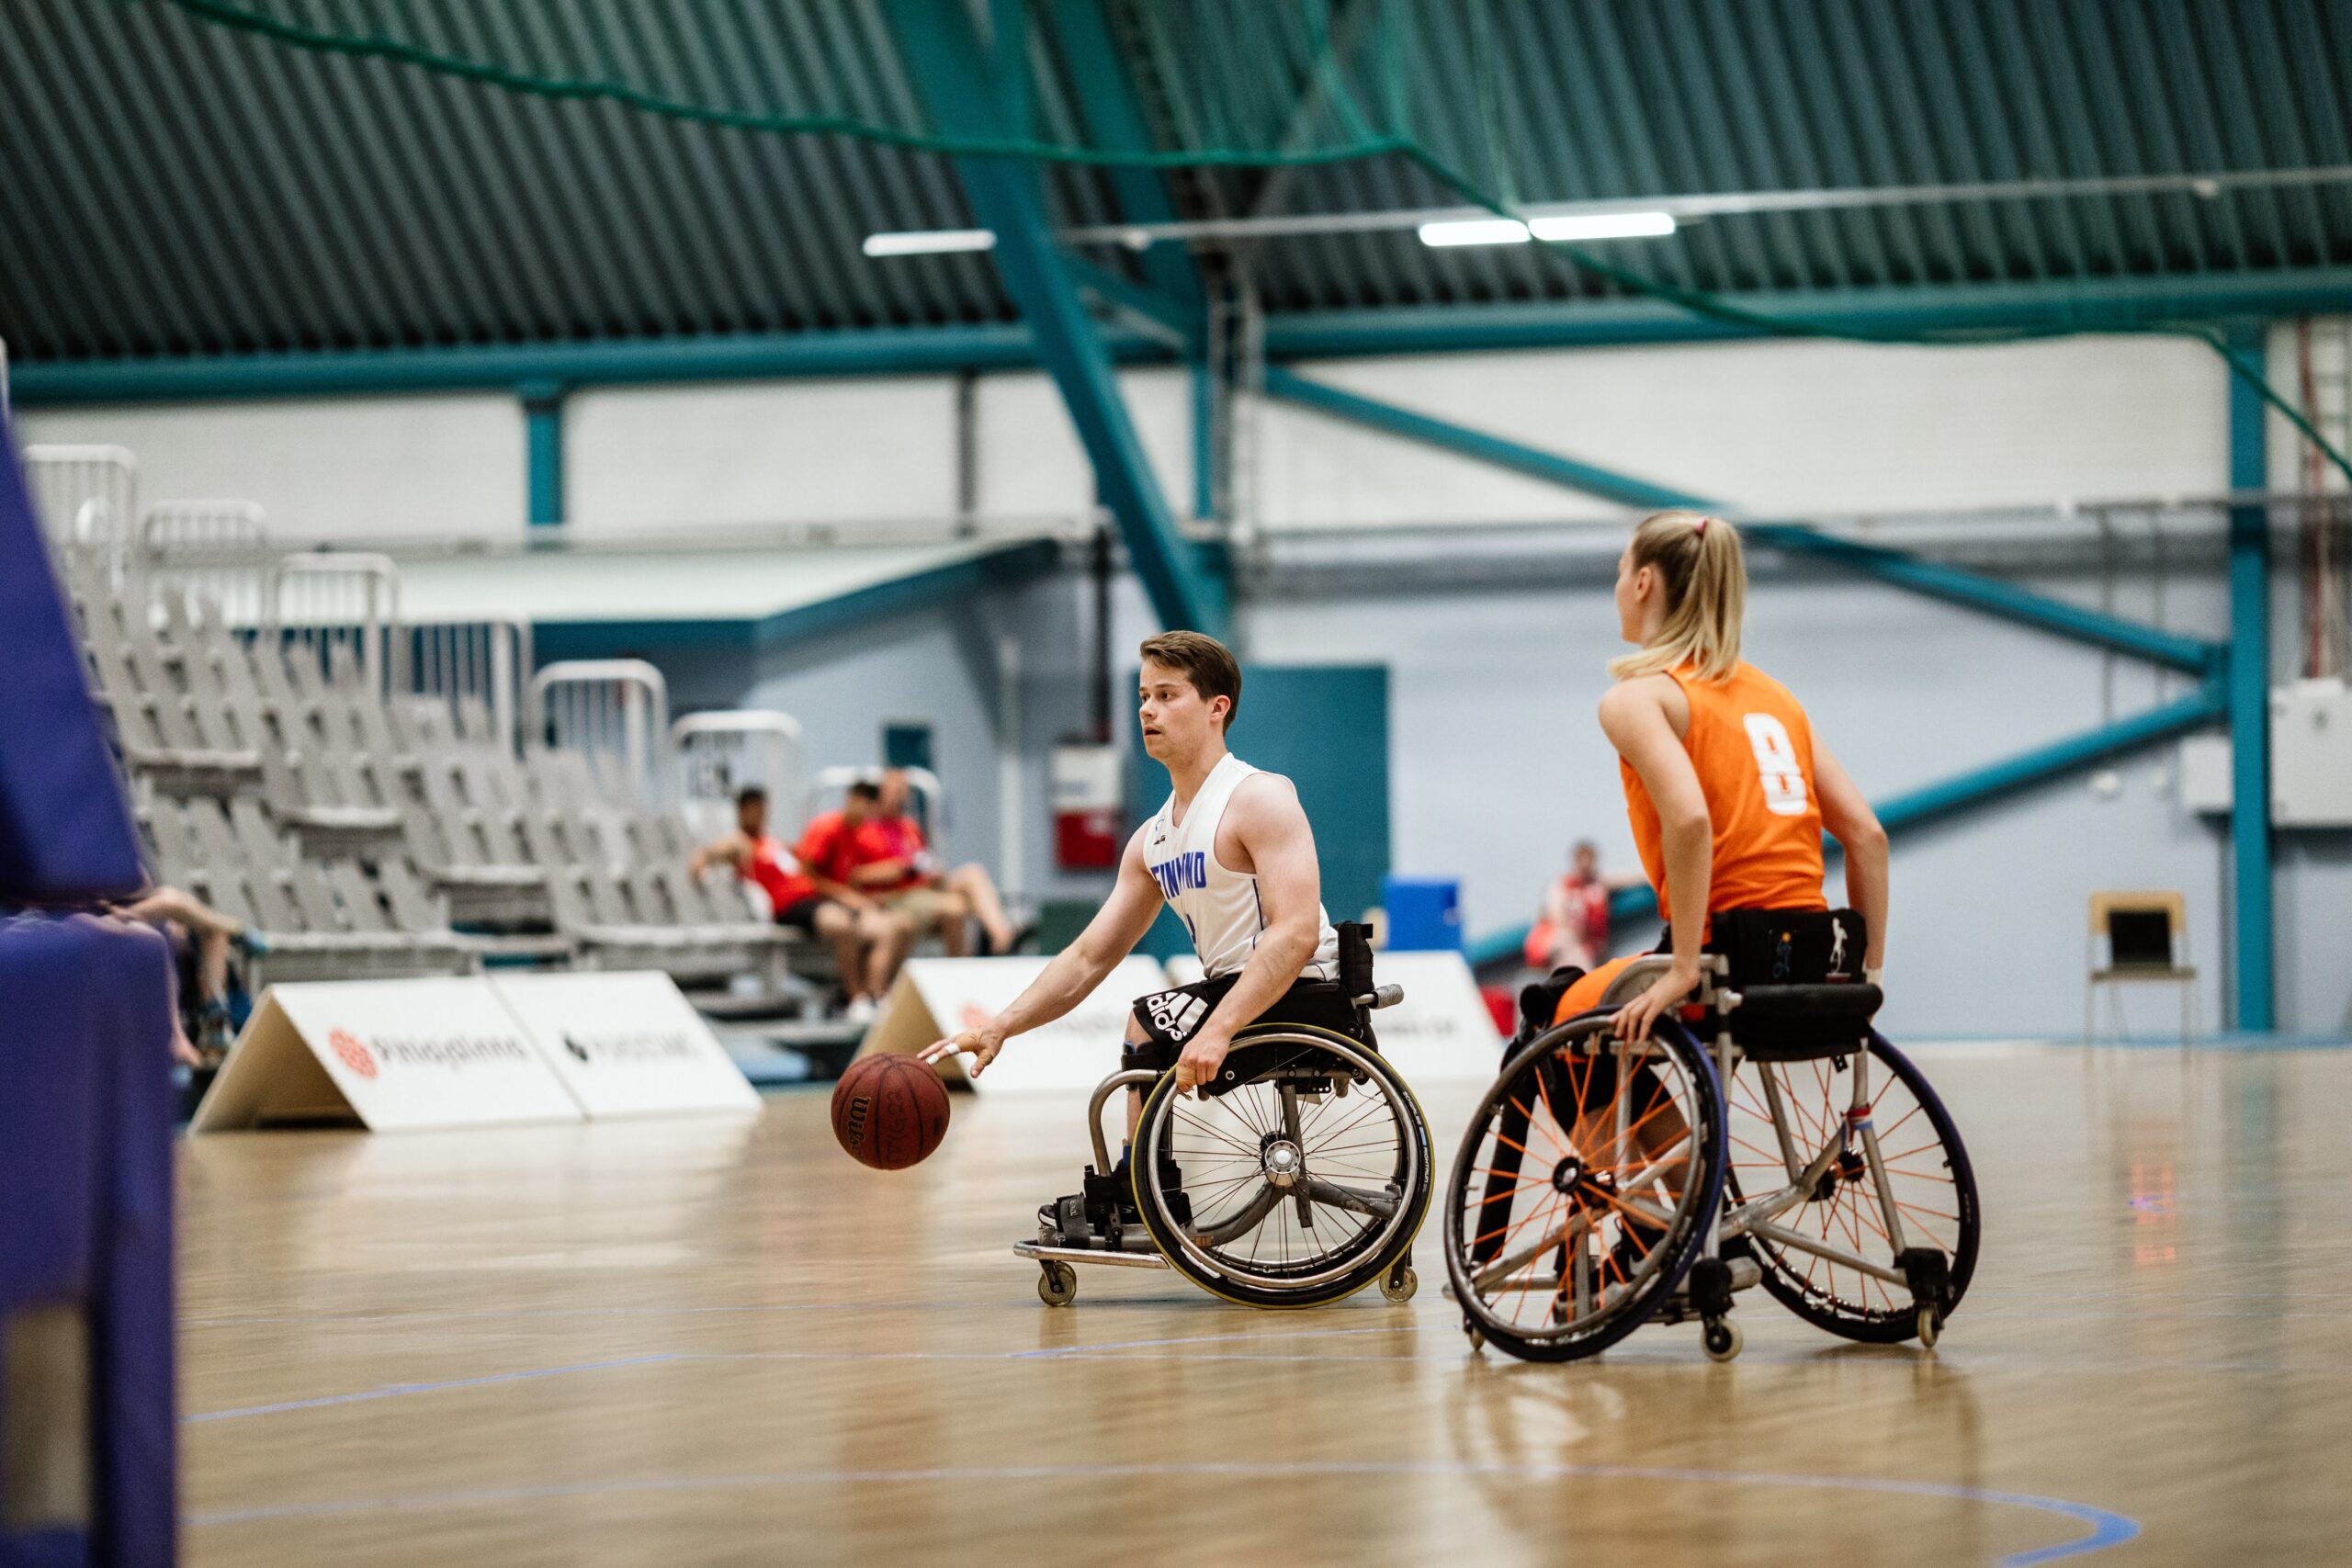 Två spelare i rullstol som spelar korgboll inomhus.